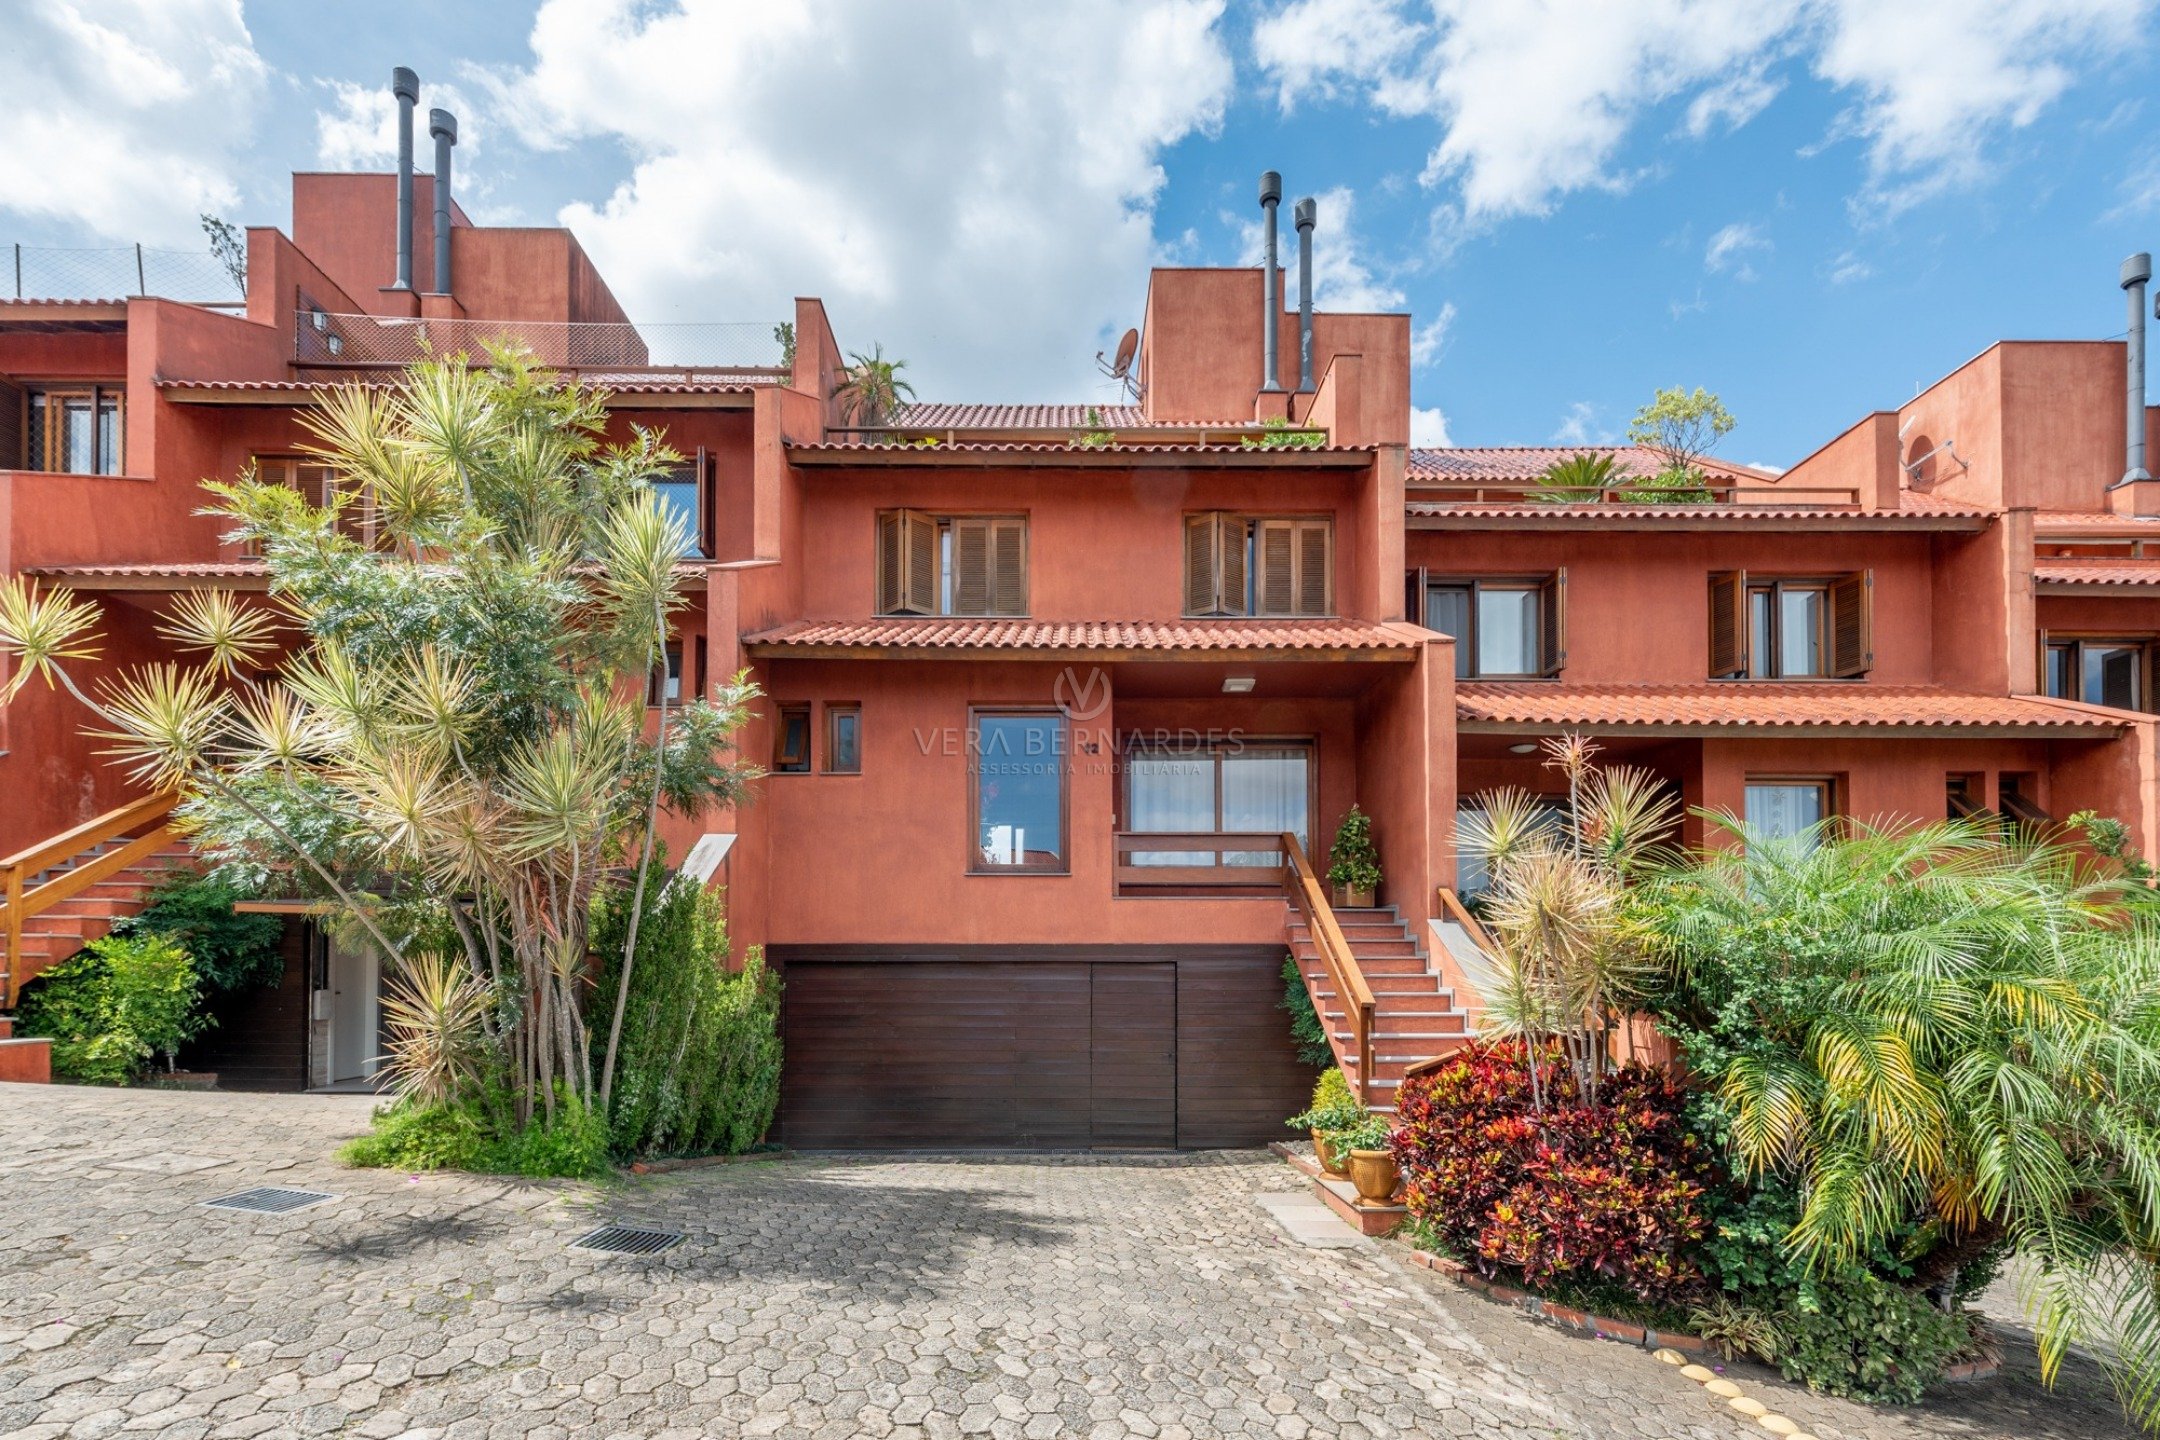 Casa em Condomínio à venda com 4 dormitórios, 382m² e 3 vagas no bairro Cristal, Zona Sul de Porto Alegre